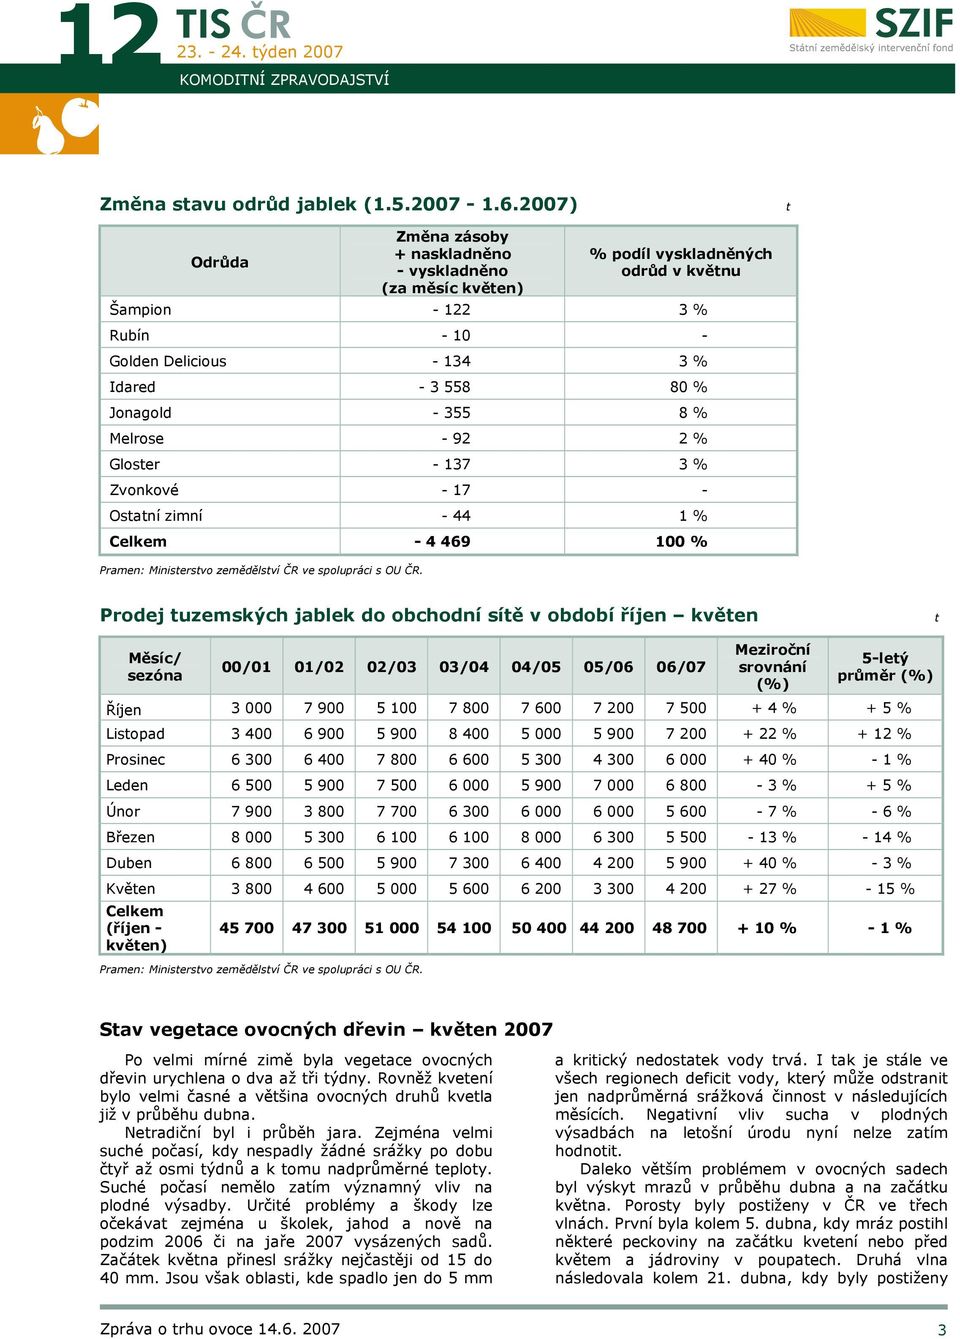 355 8 % Melrose - 92 2 % Gloster - 137 3 % Zvonkové - 17 - Ostatní zimní - 44 1 % Celkem - 4 469 100 % Pramen: Ministerstvo zemědělství ČR ve spolupráci s OU ČR.